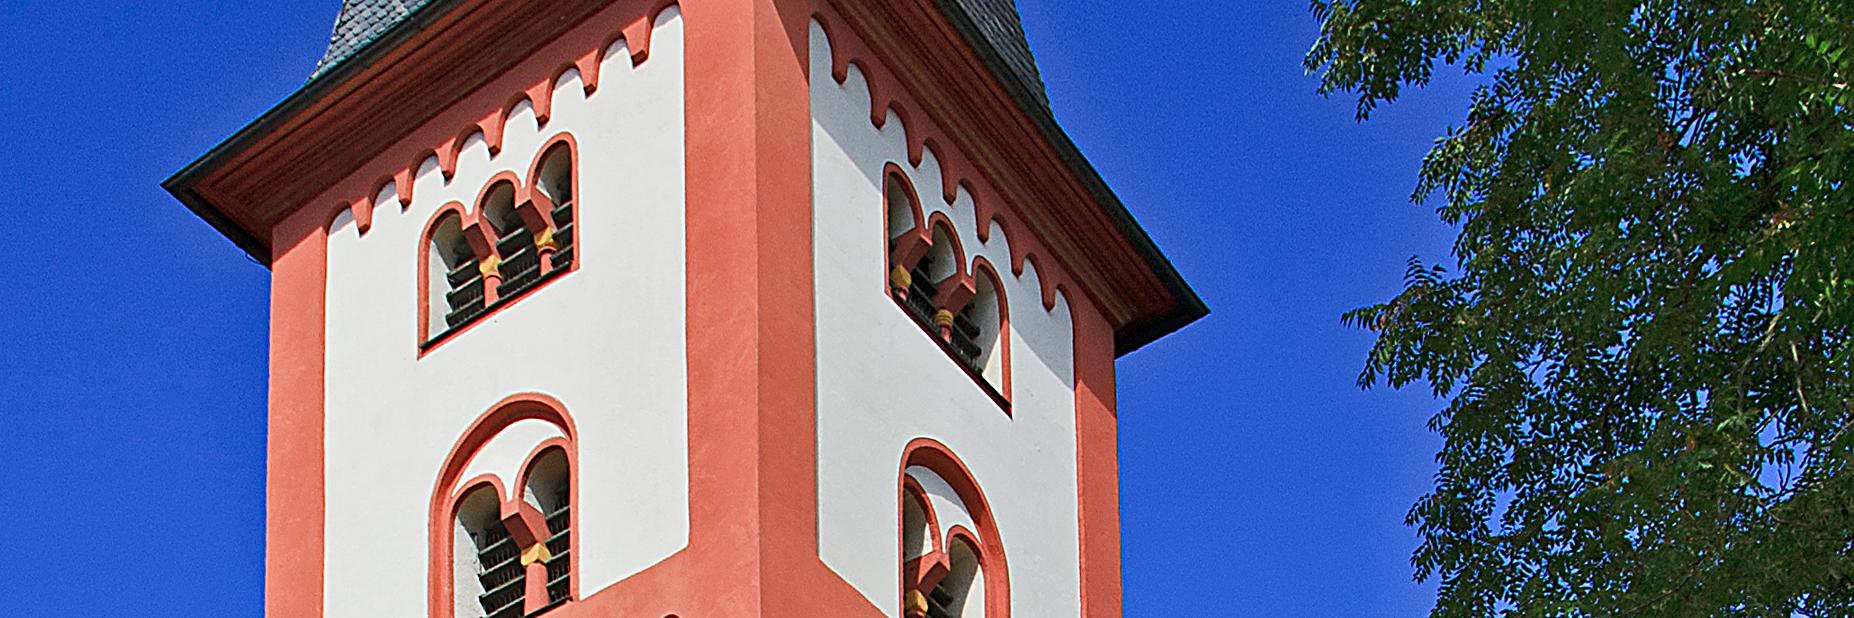 Katholische Pfarrkirche St. Aureus und St. Justina Bingen-Büdesheim (c) Von Rudolf Stricker - Eigenes Werk, Attribution, https://commons.wikimedia.org/w/index.php?curid=11373882